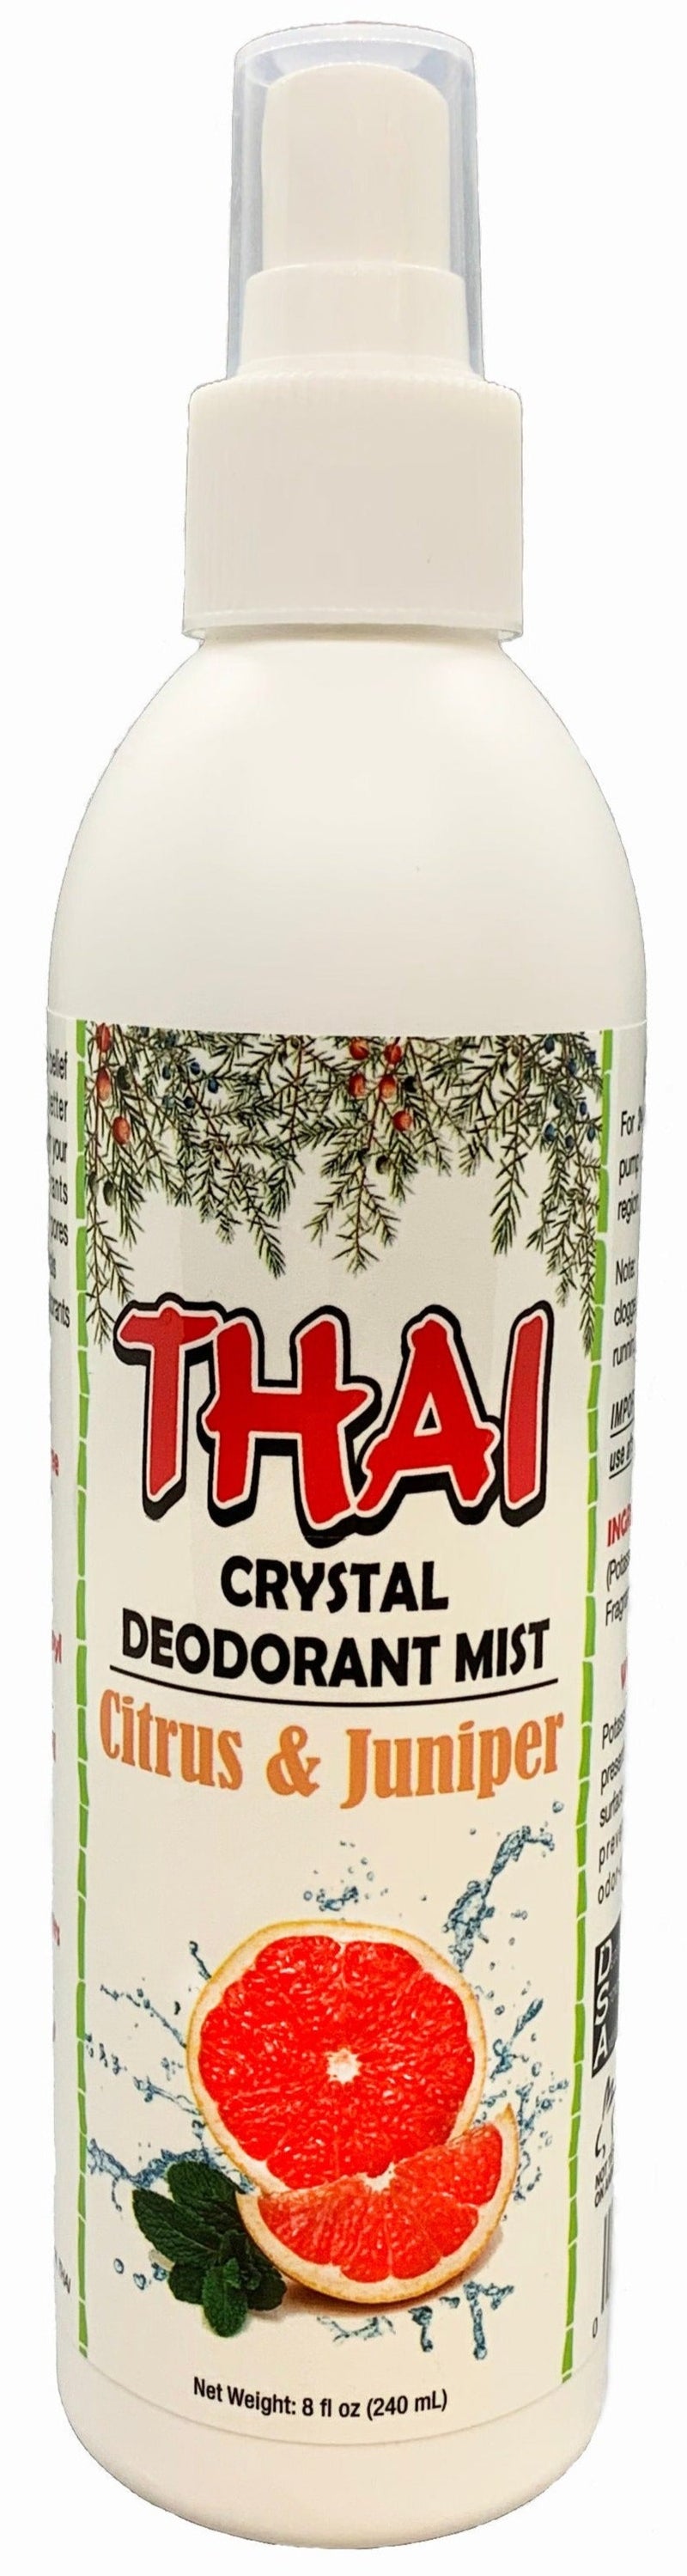 Thai Crystal Mist Citrus & Juniper - MeStore